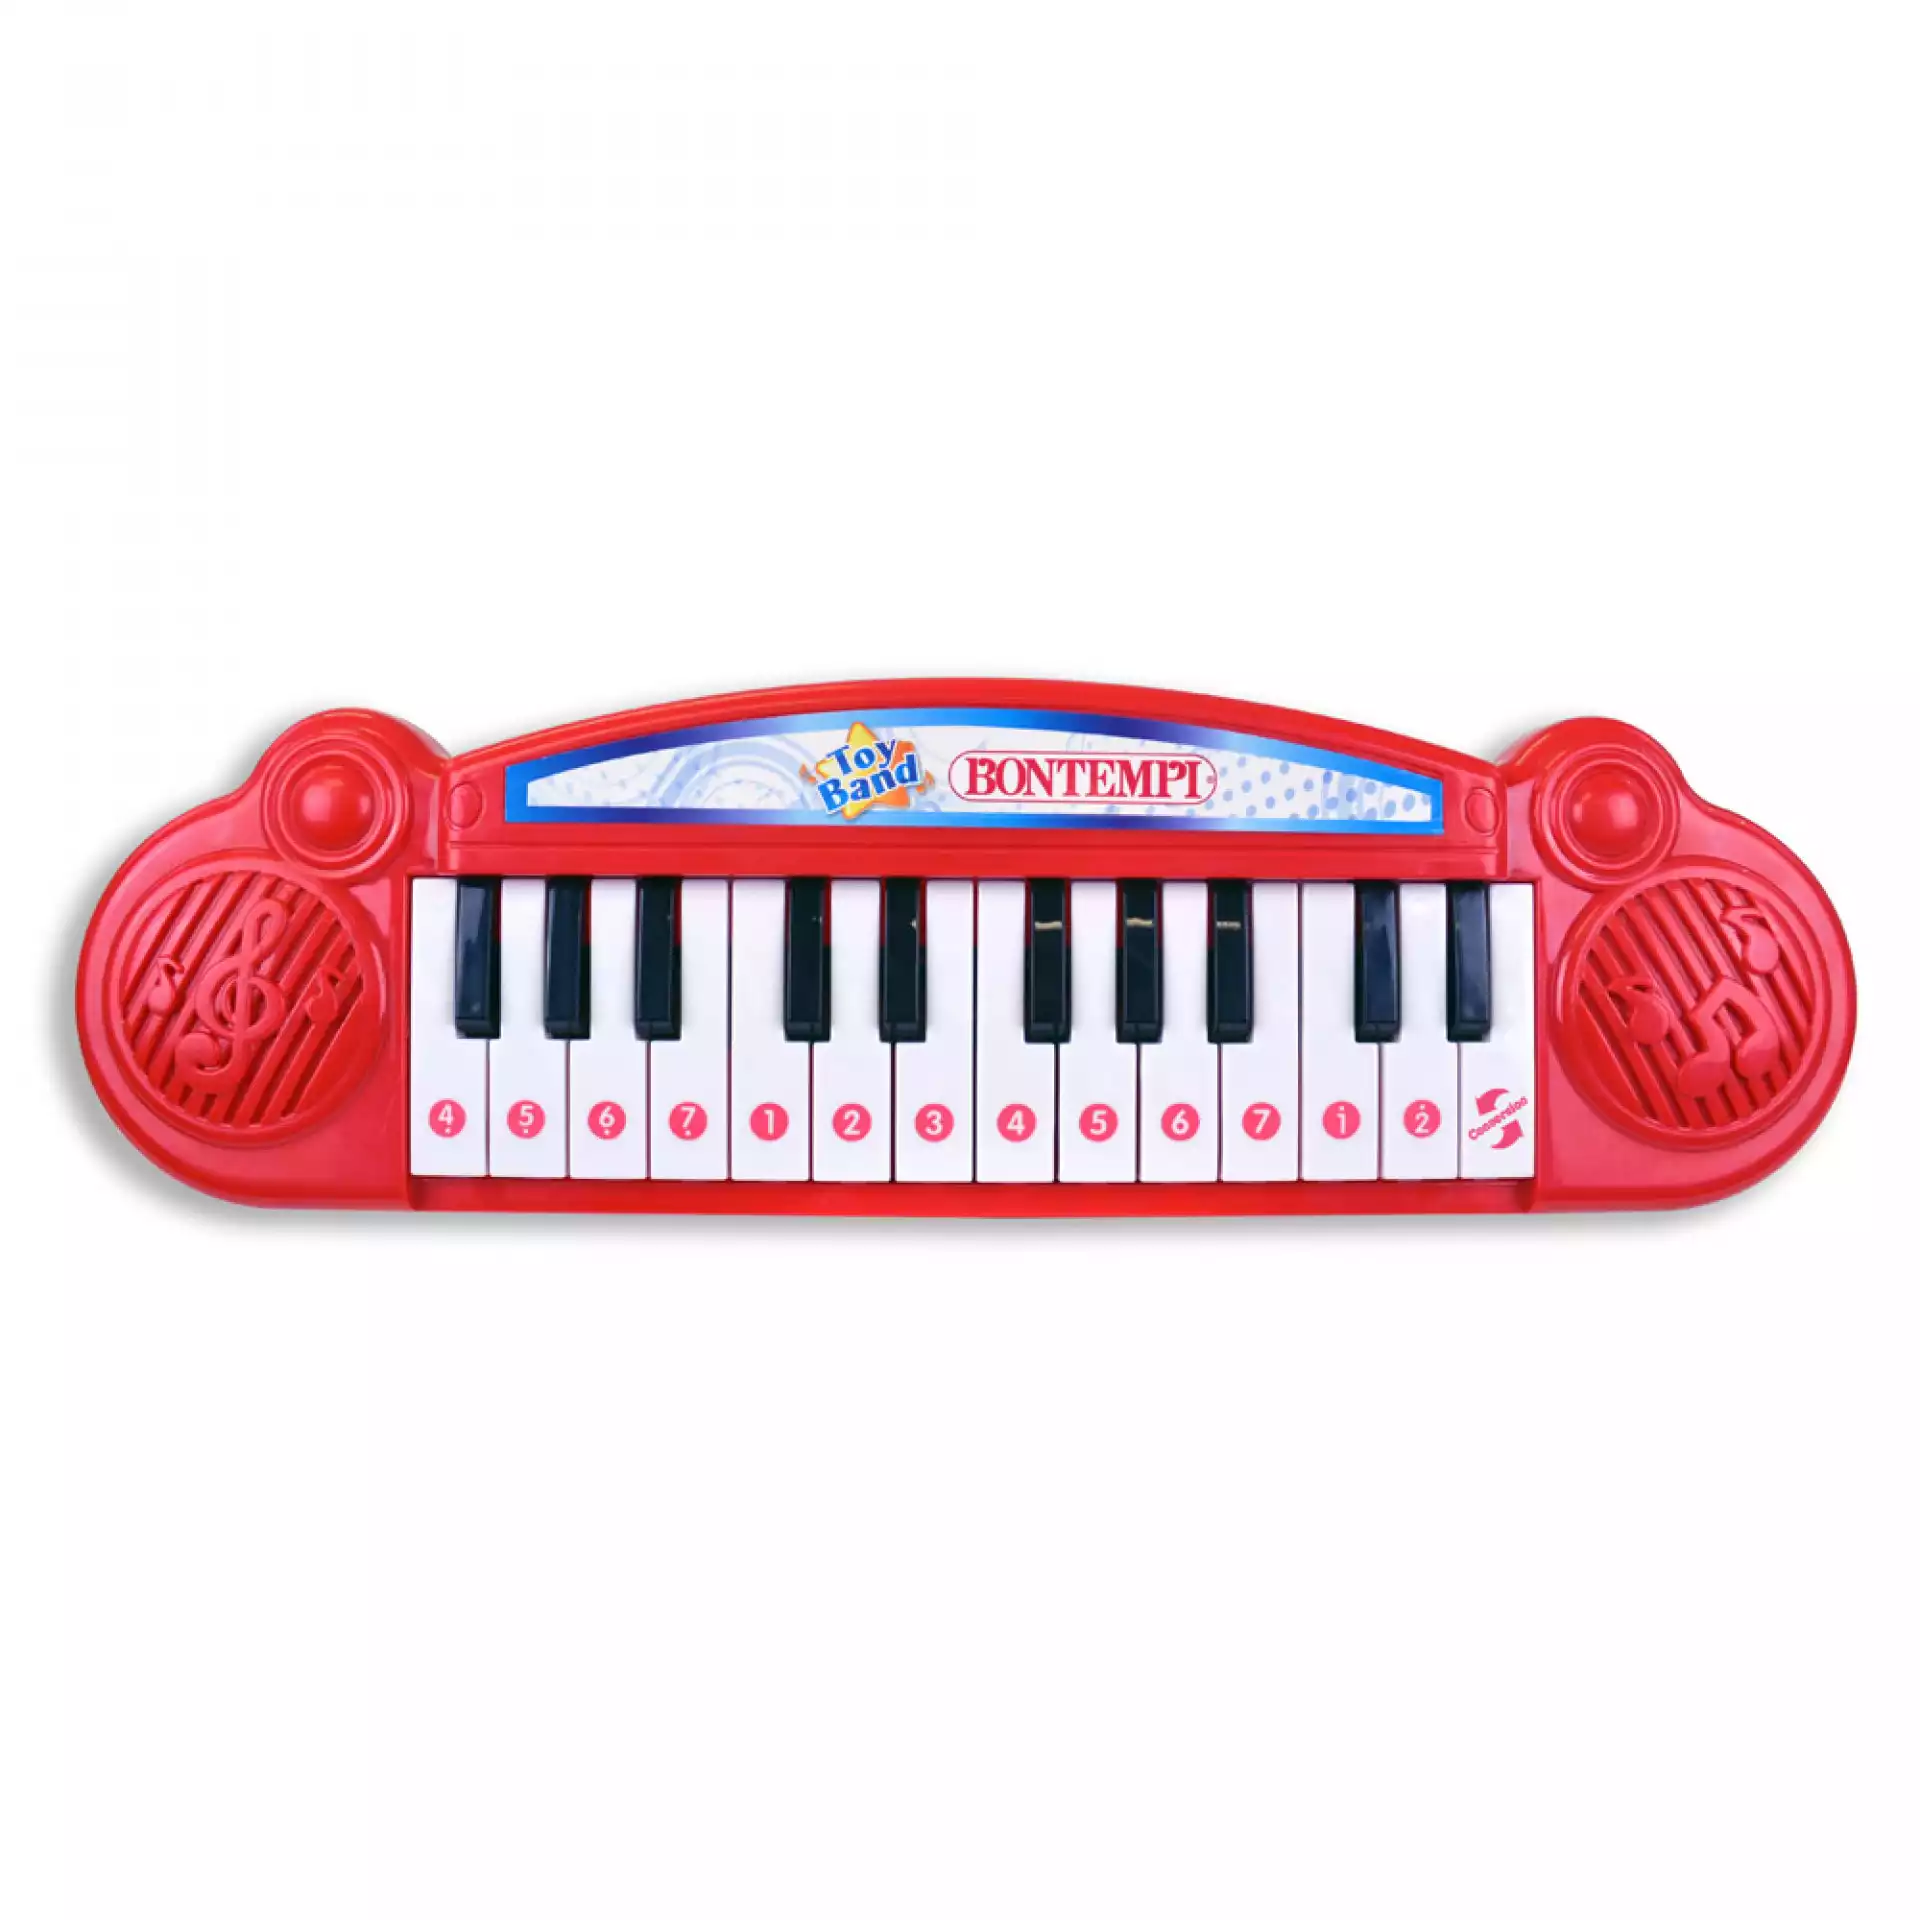 Bontempi mini keyboard 2406